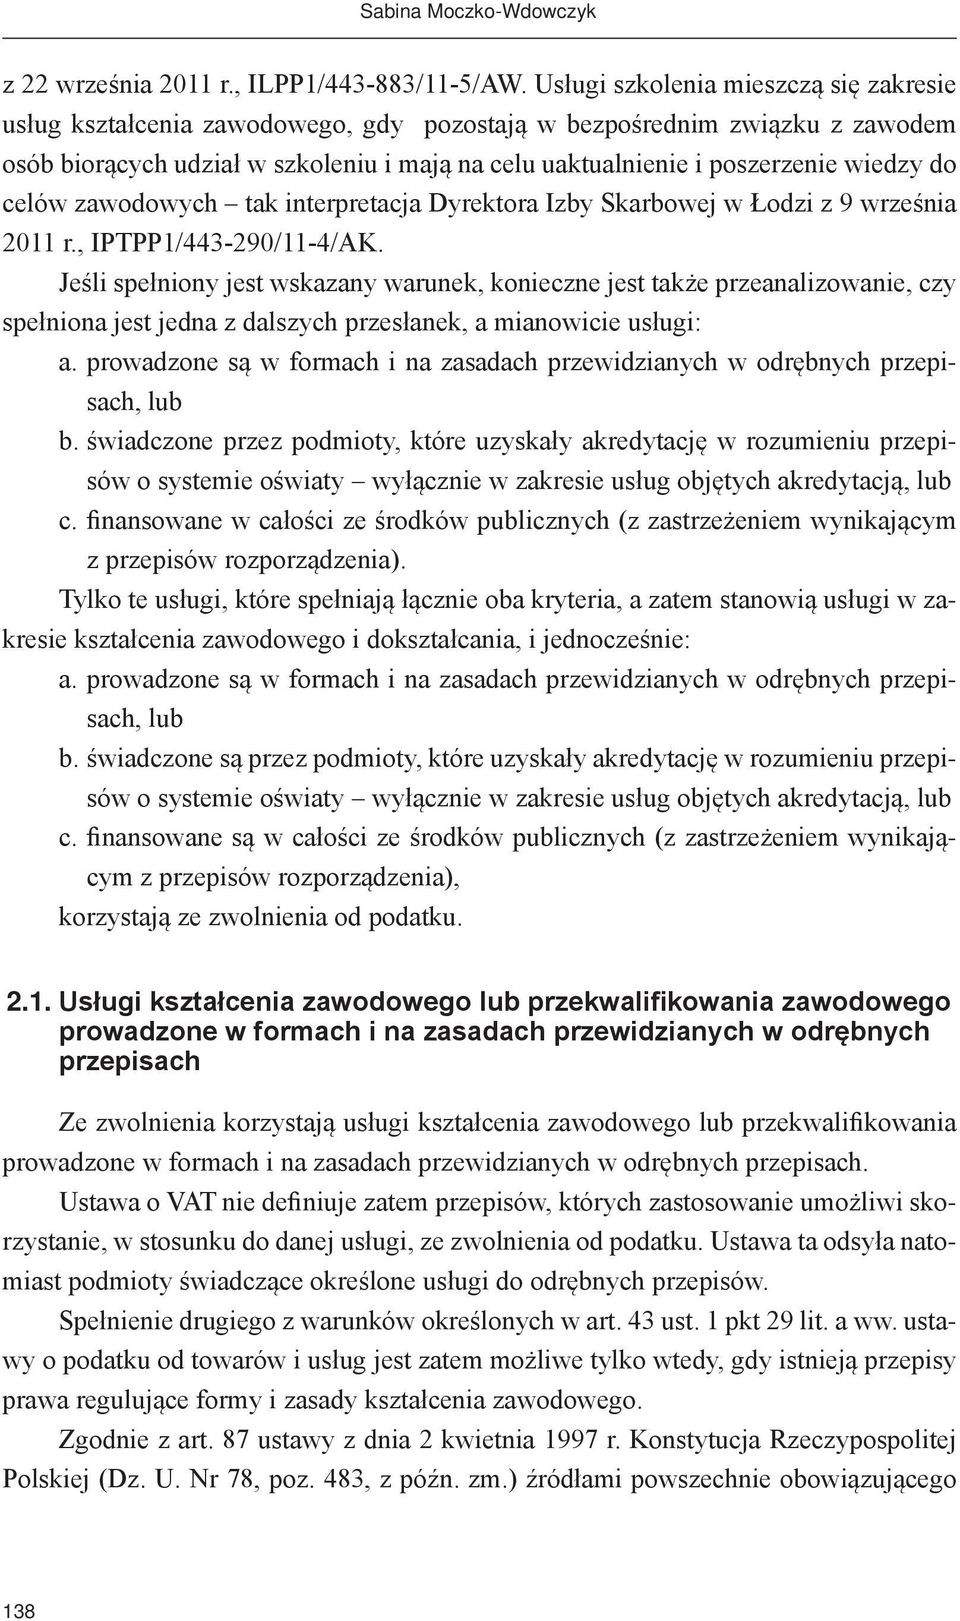 do celów zawodowych tak interpretacja Dyrektora Izby Skarbowej w Łodzi z 9 września 2011 r., IPTPP1/443-290/11-4/AK.